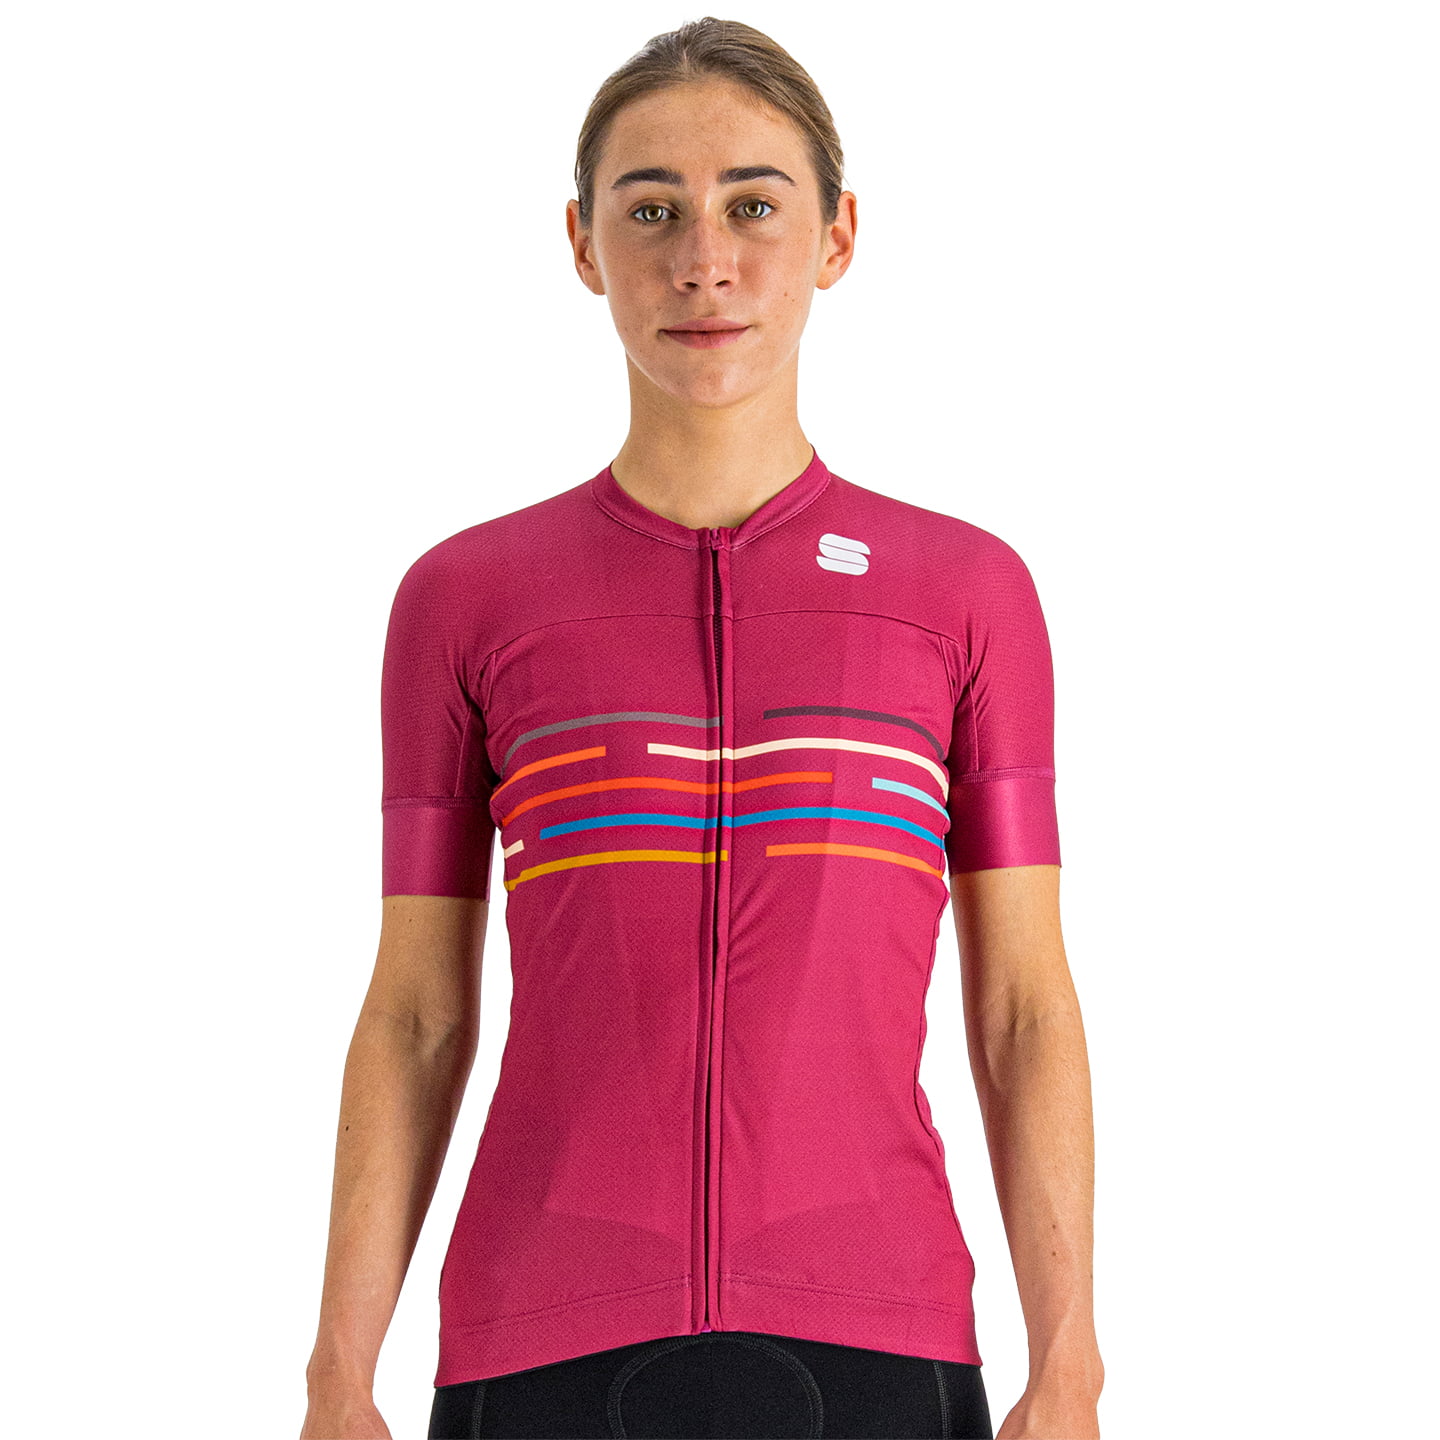 SPORTFUL Velodrome Women’s Jersey Women’s Short Sleeve Jersey, size XL, Cycle jersey, Bike gear